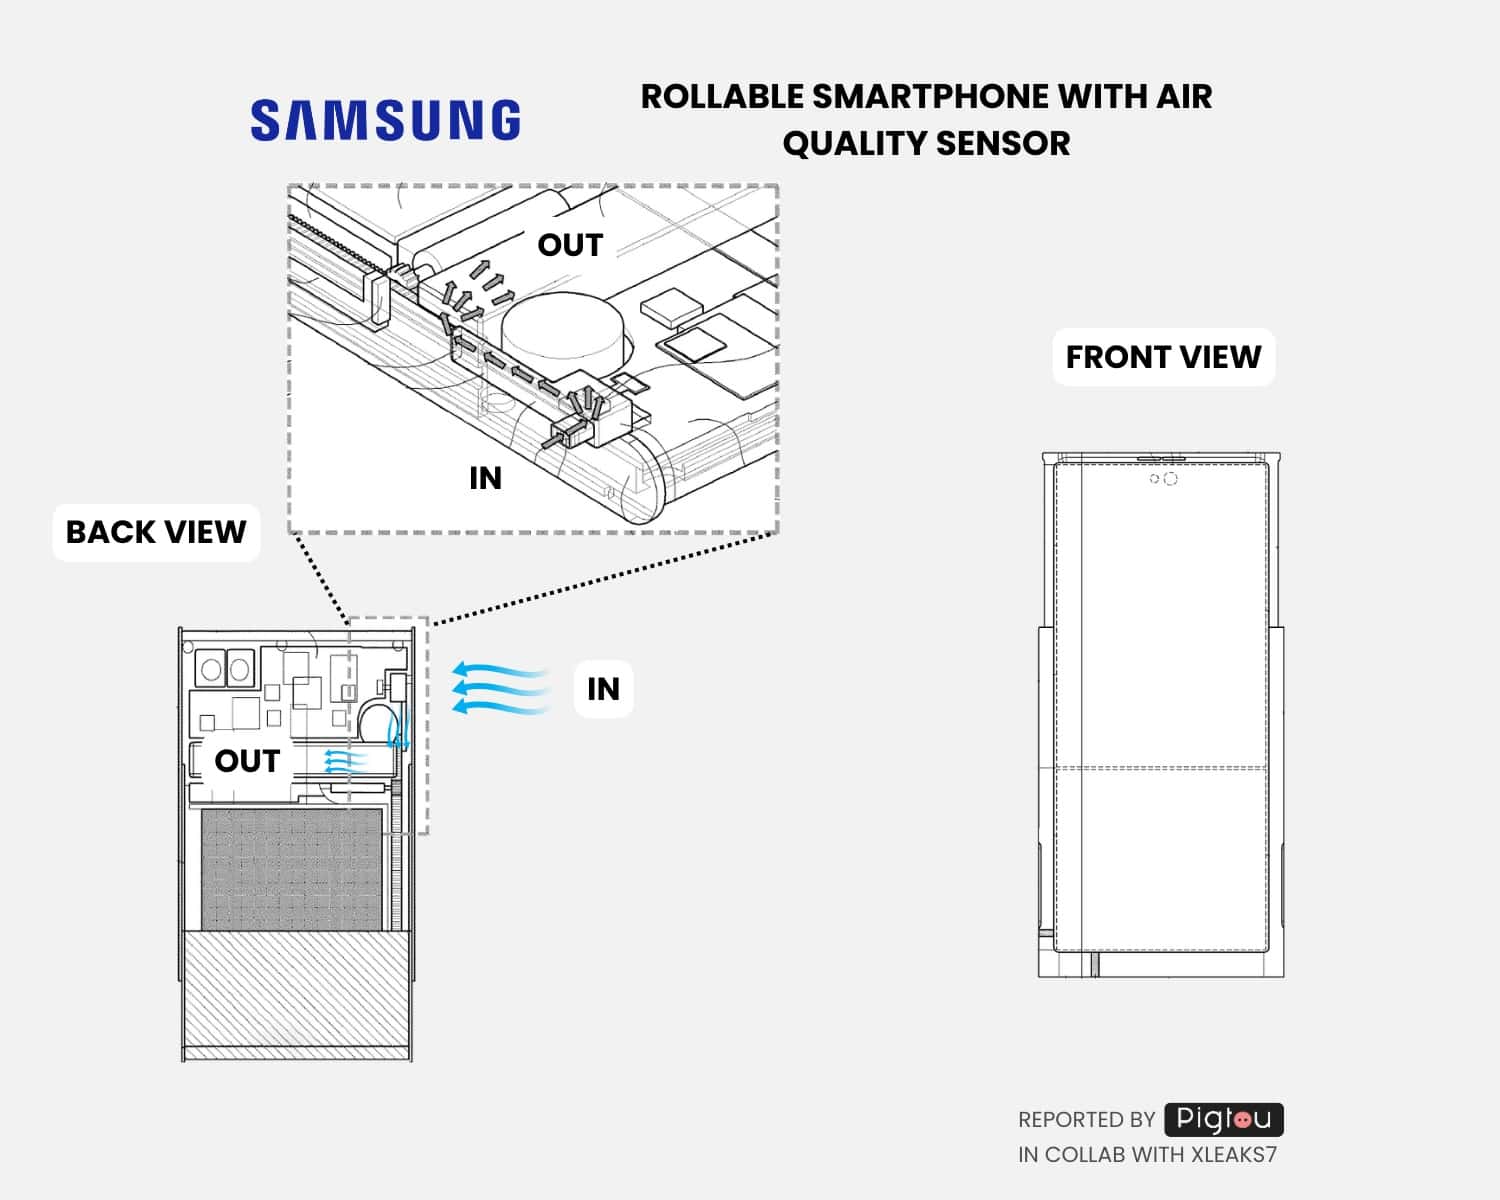 Patentierter Luftqualitätssensor für rollbares Samsung-Smartphone